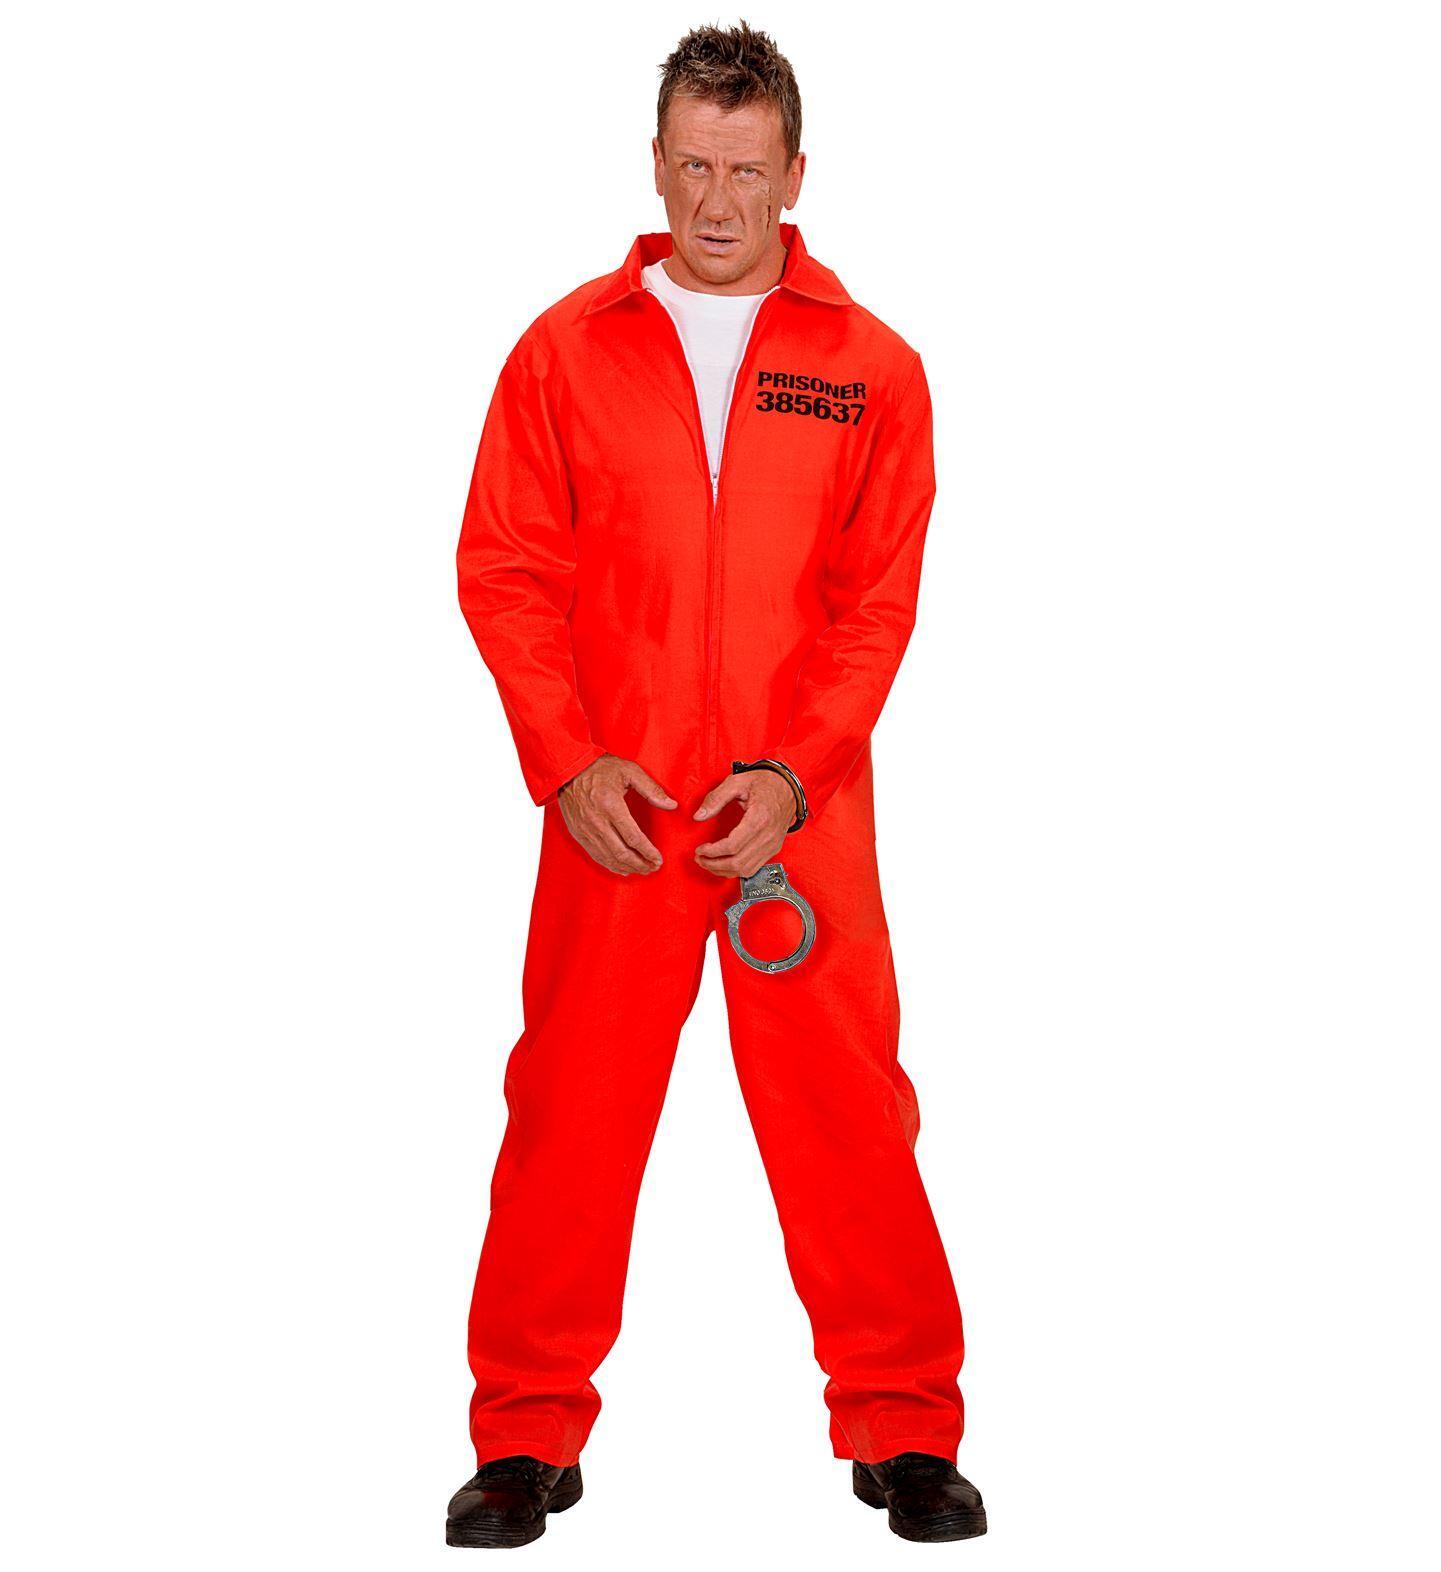 Rode Gevangen overall met handboeien boef schurk outfitje Carnaval